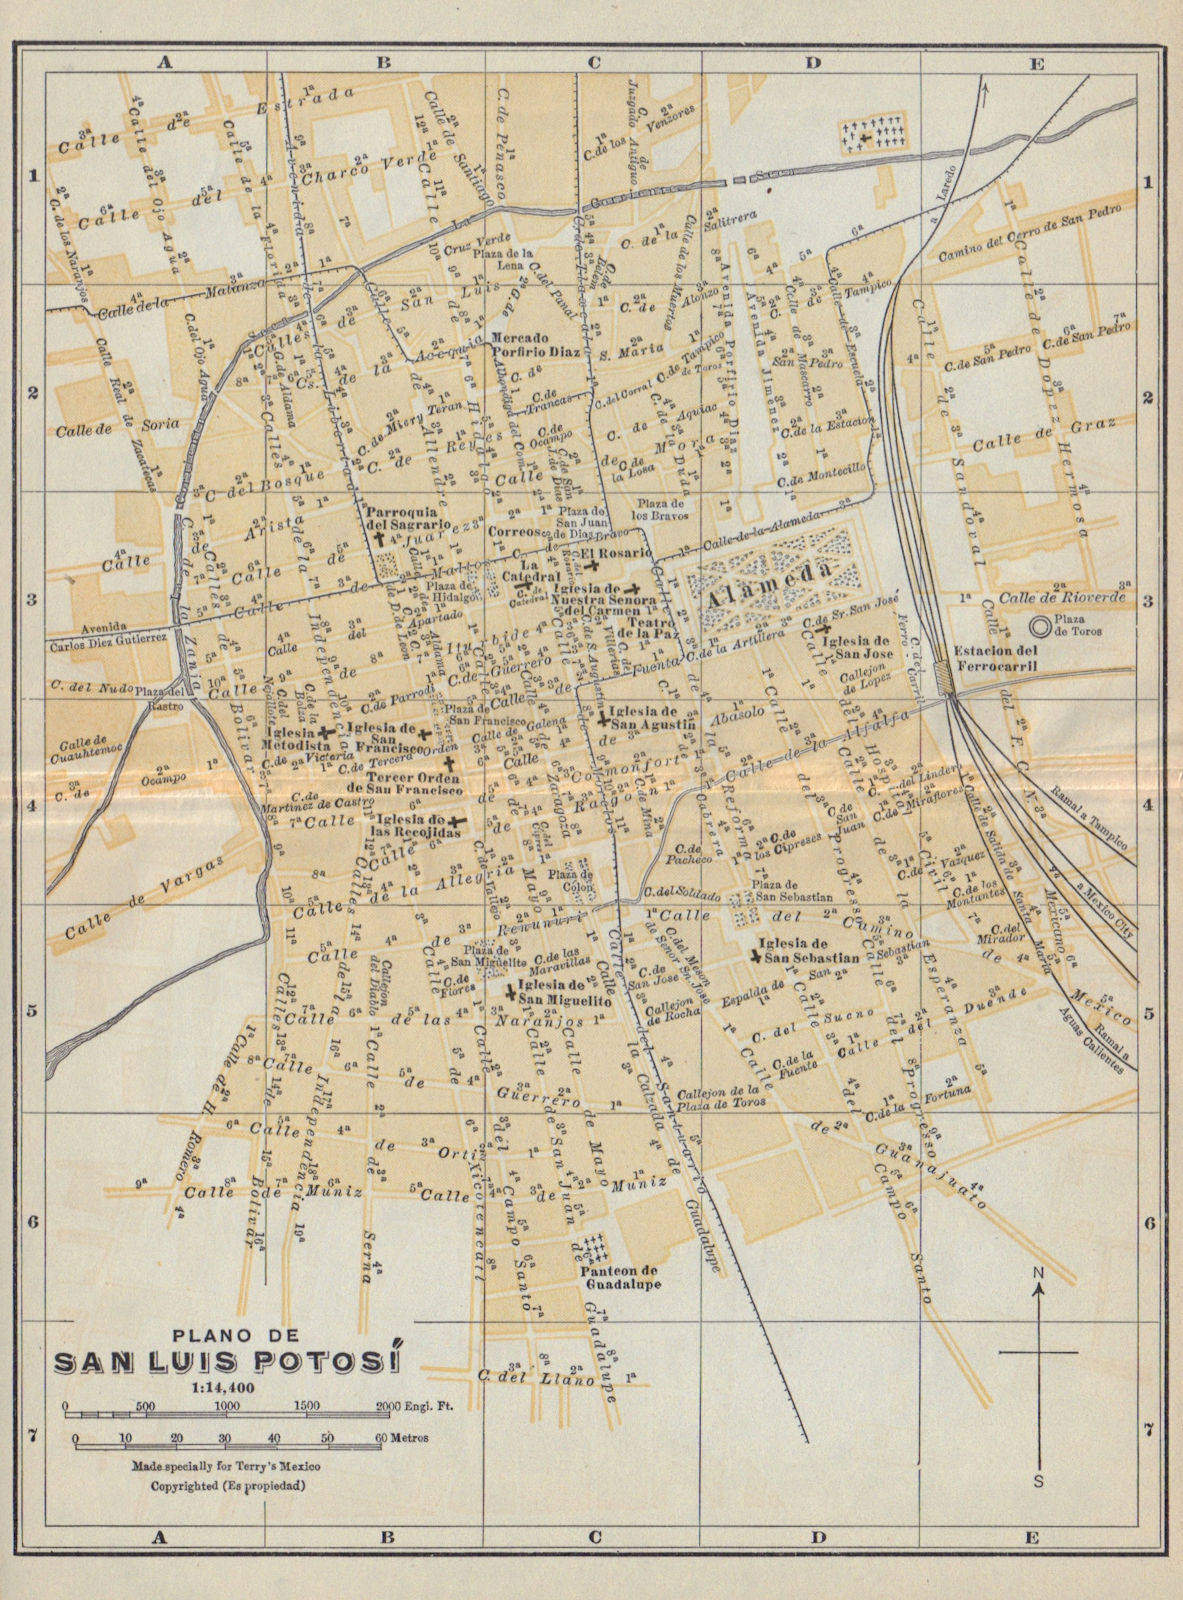 Plano de SAN LUIS POTOSI, Mexico. Mapa de la ciudad. City/town plan 1938